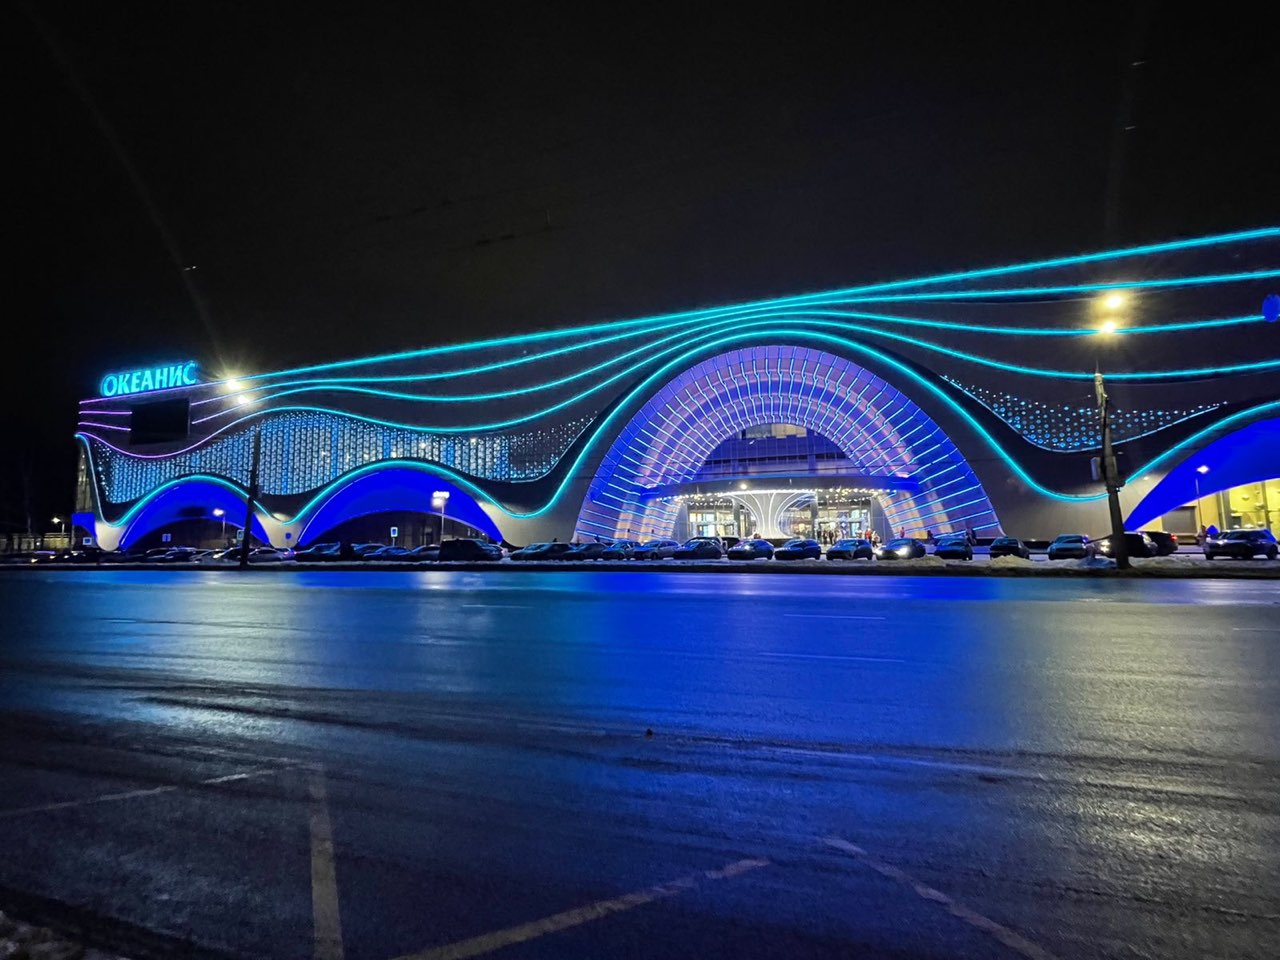 Аквапарк «Океанис» у парка «Швейцария» в Нижнем Новгороде показали изнутри  - фото 1